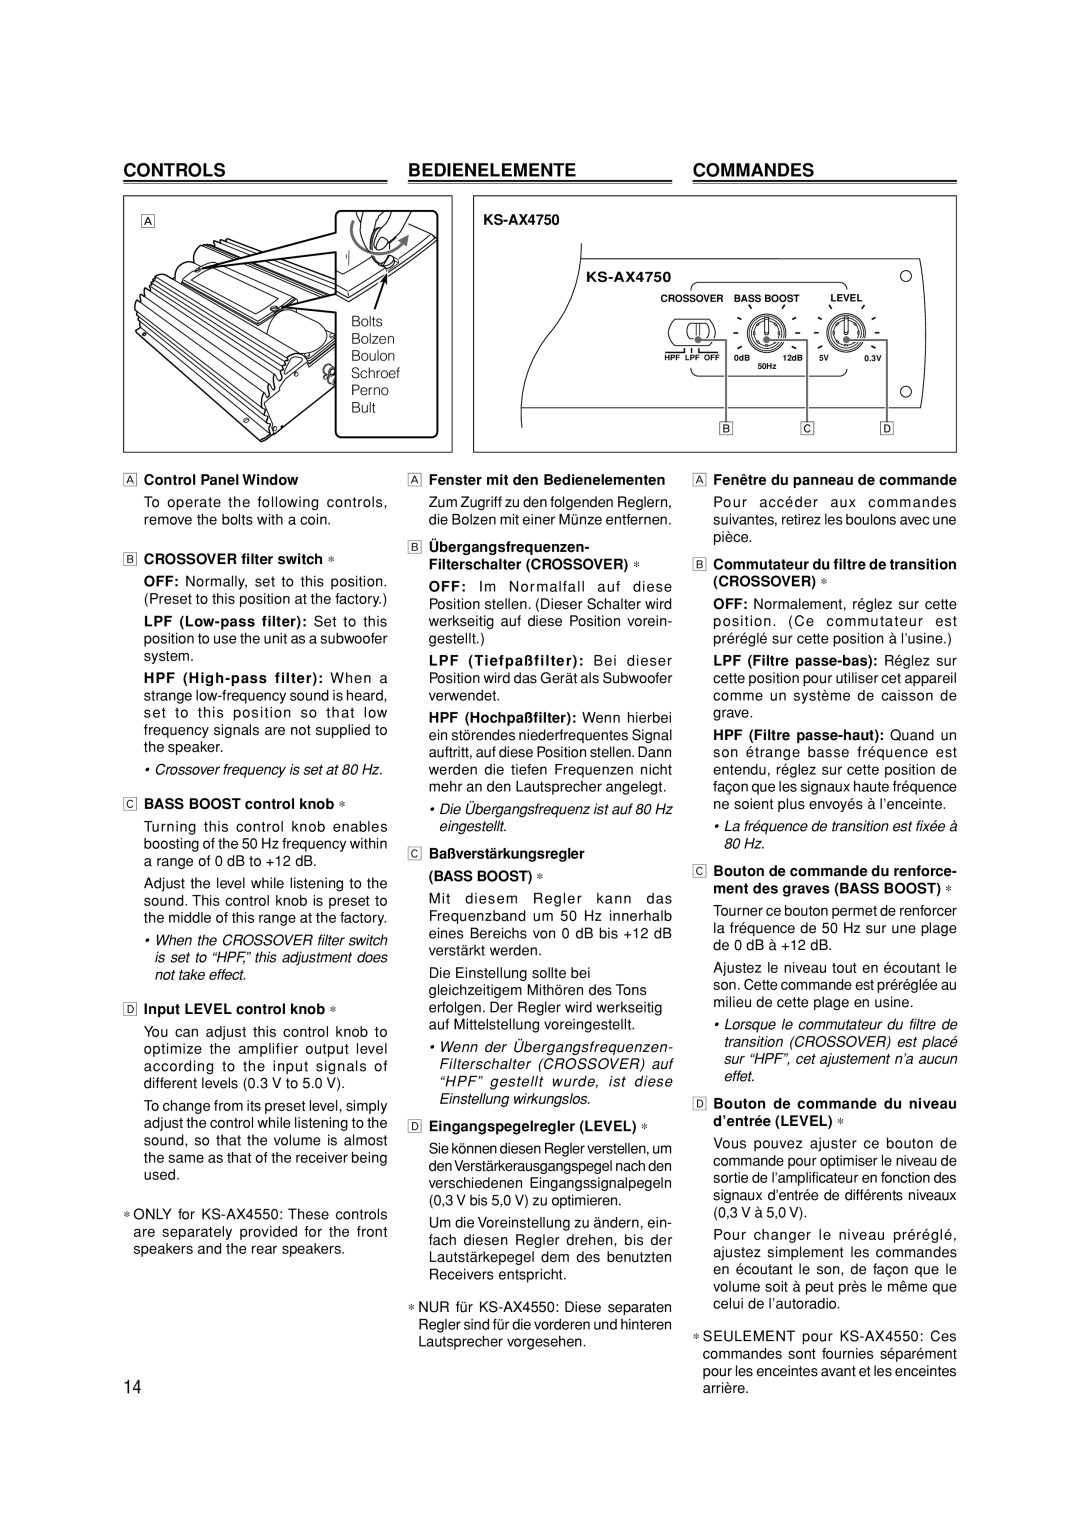 JVC KS-AX4550 manual Controls, Bedienelemente, Commandes 